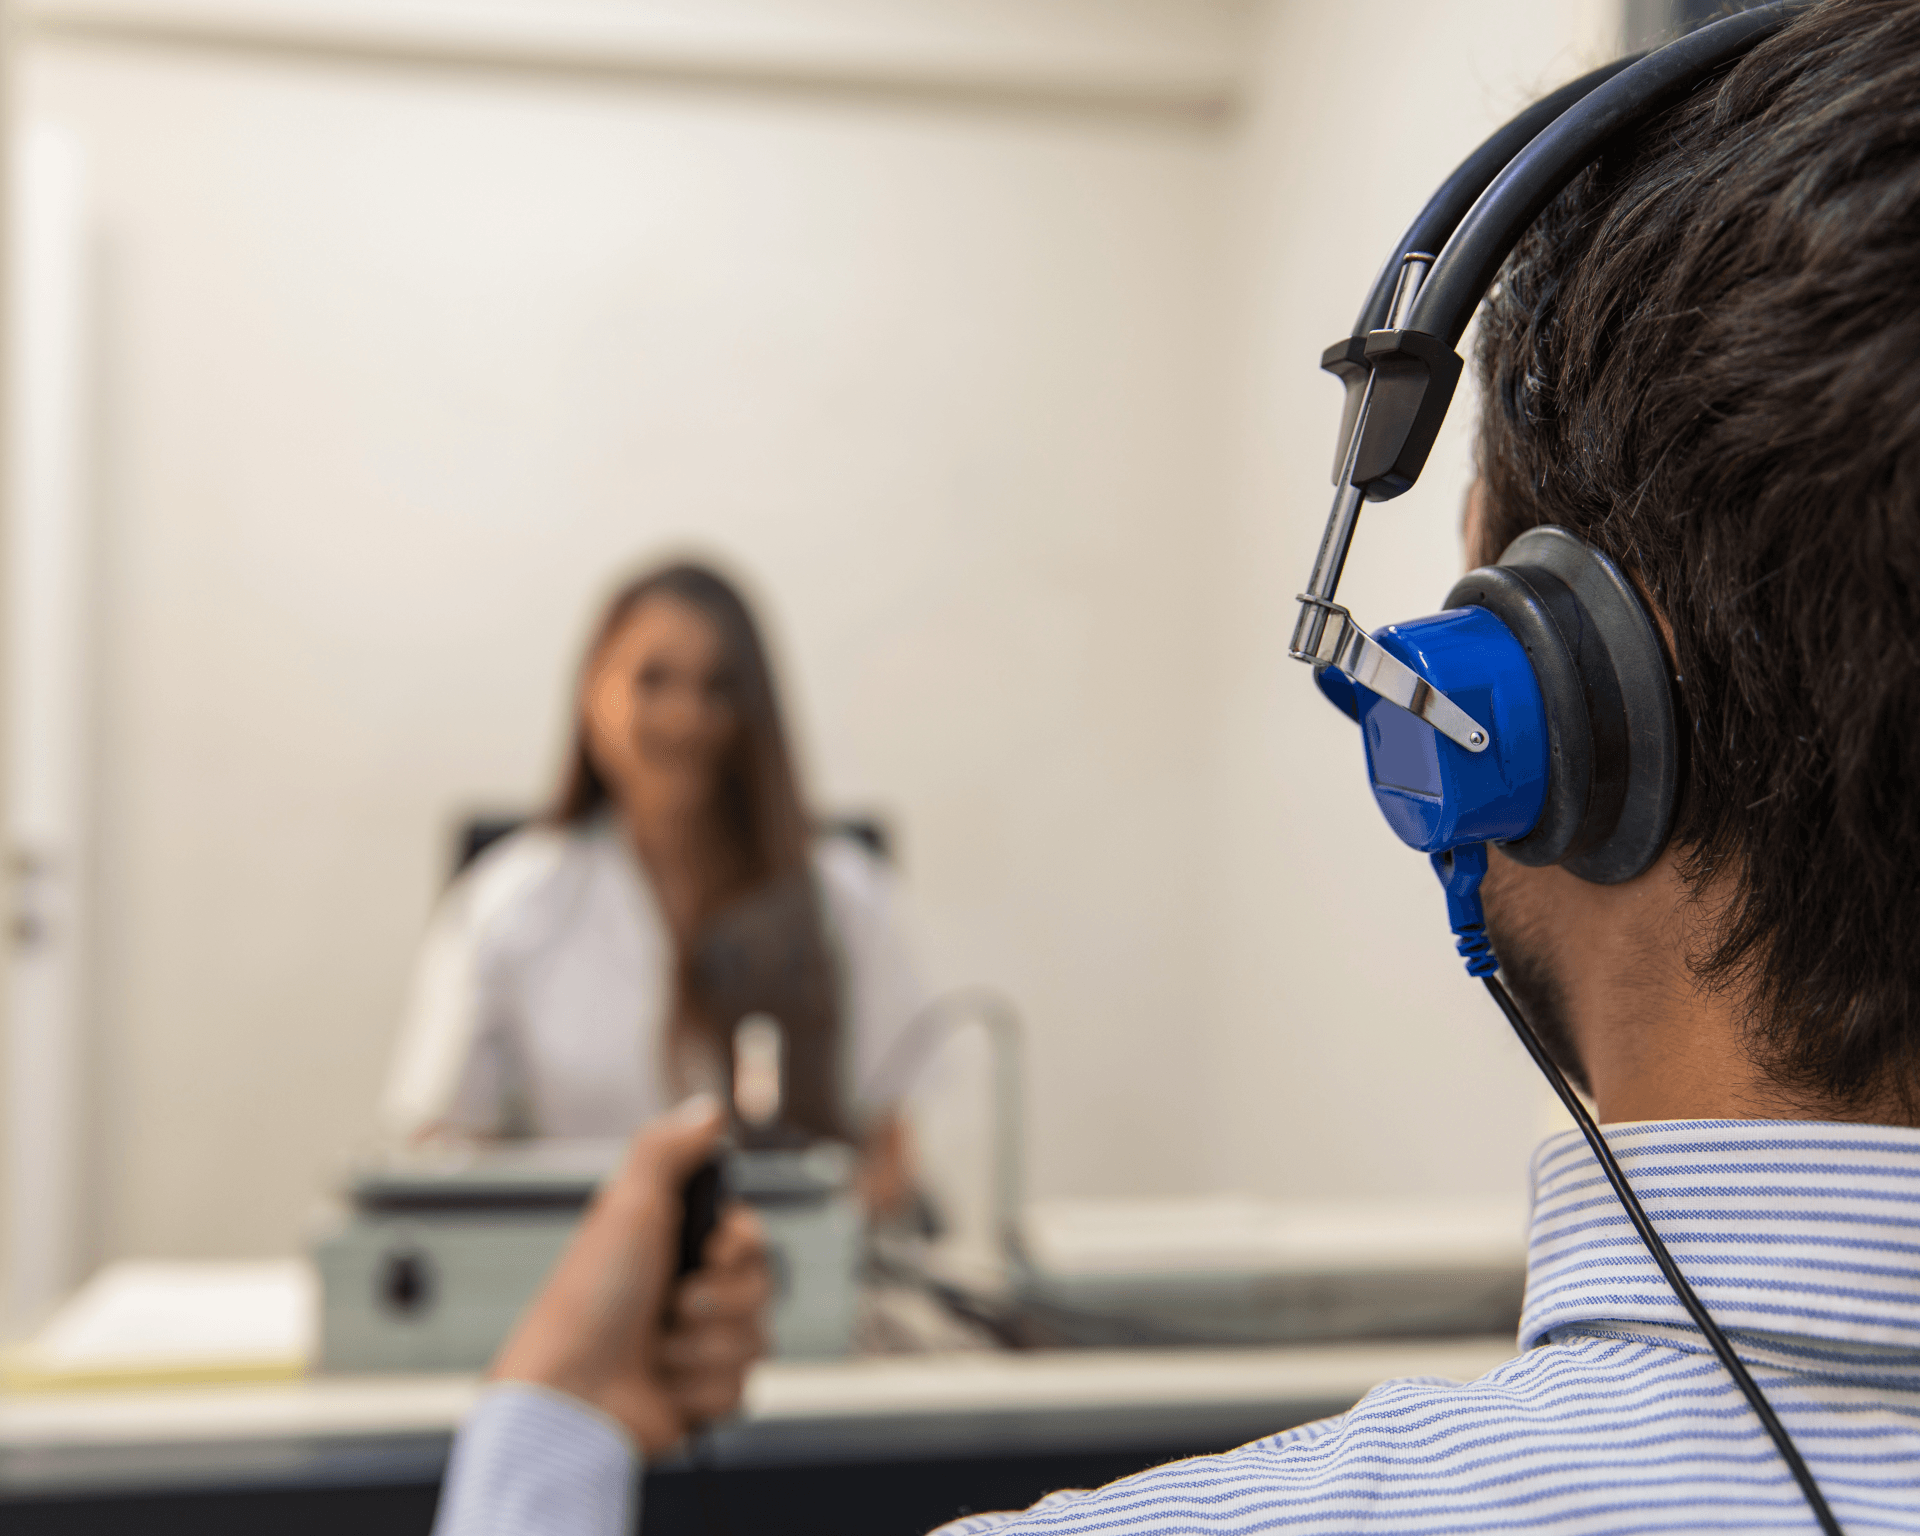 Test auditif complet effectué dans une cabine insonorisée avec un audiologiste